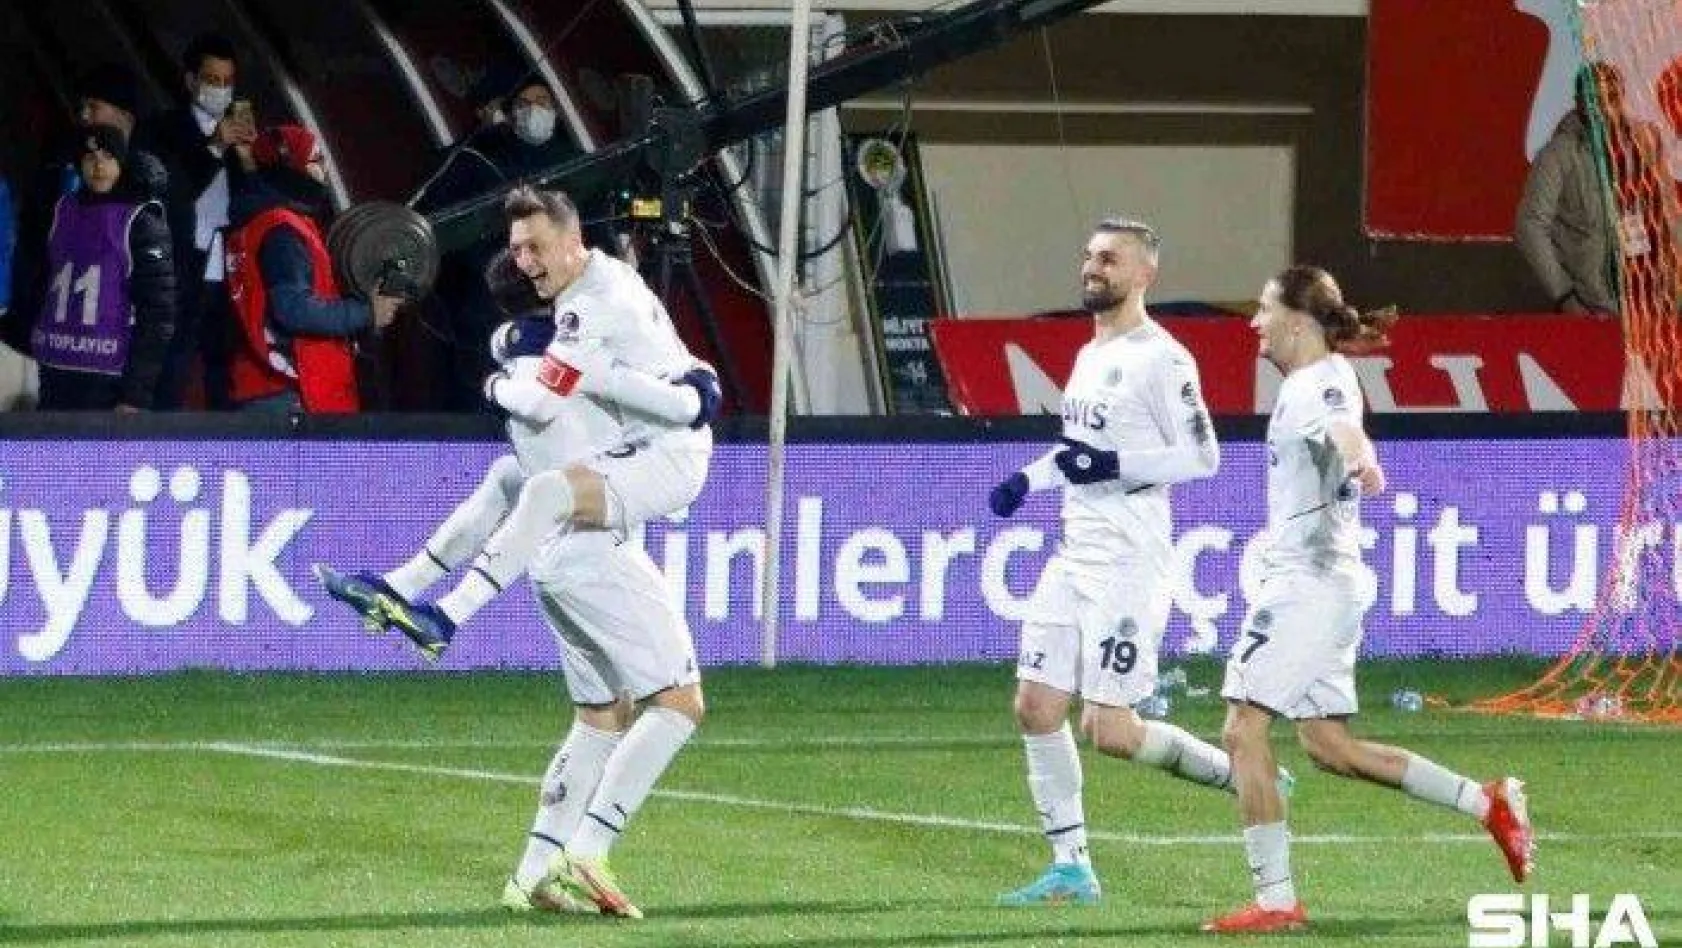 Süper Lig'de 29. hafta gollü geçti